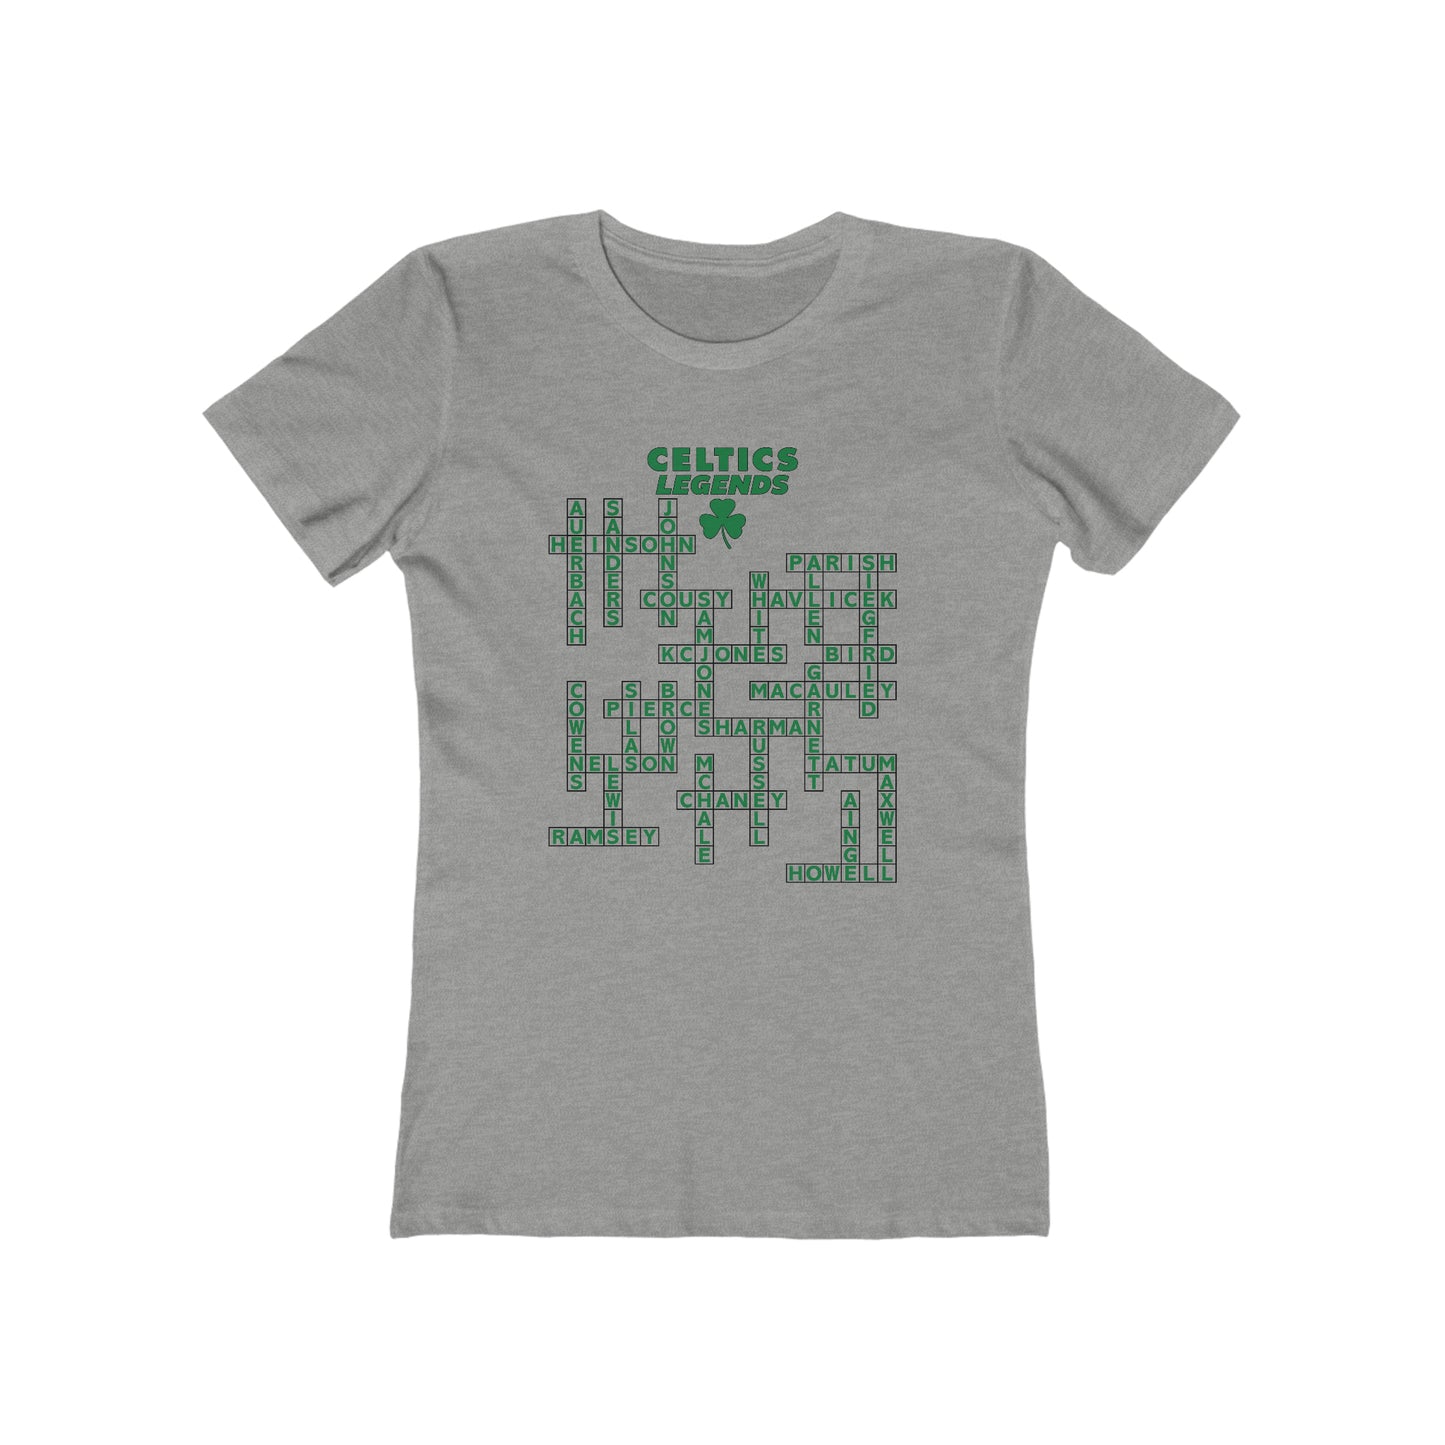 Celtics Legends Crossword - Women's T-Shirt